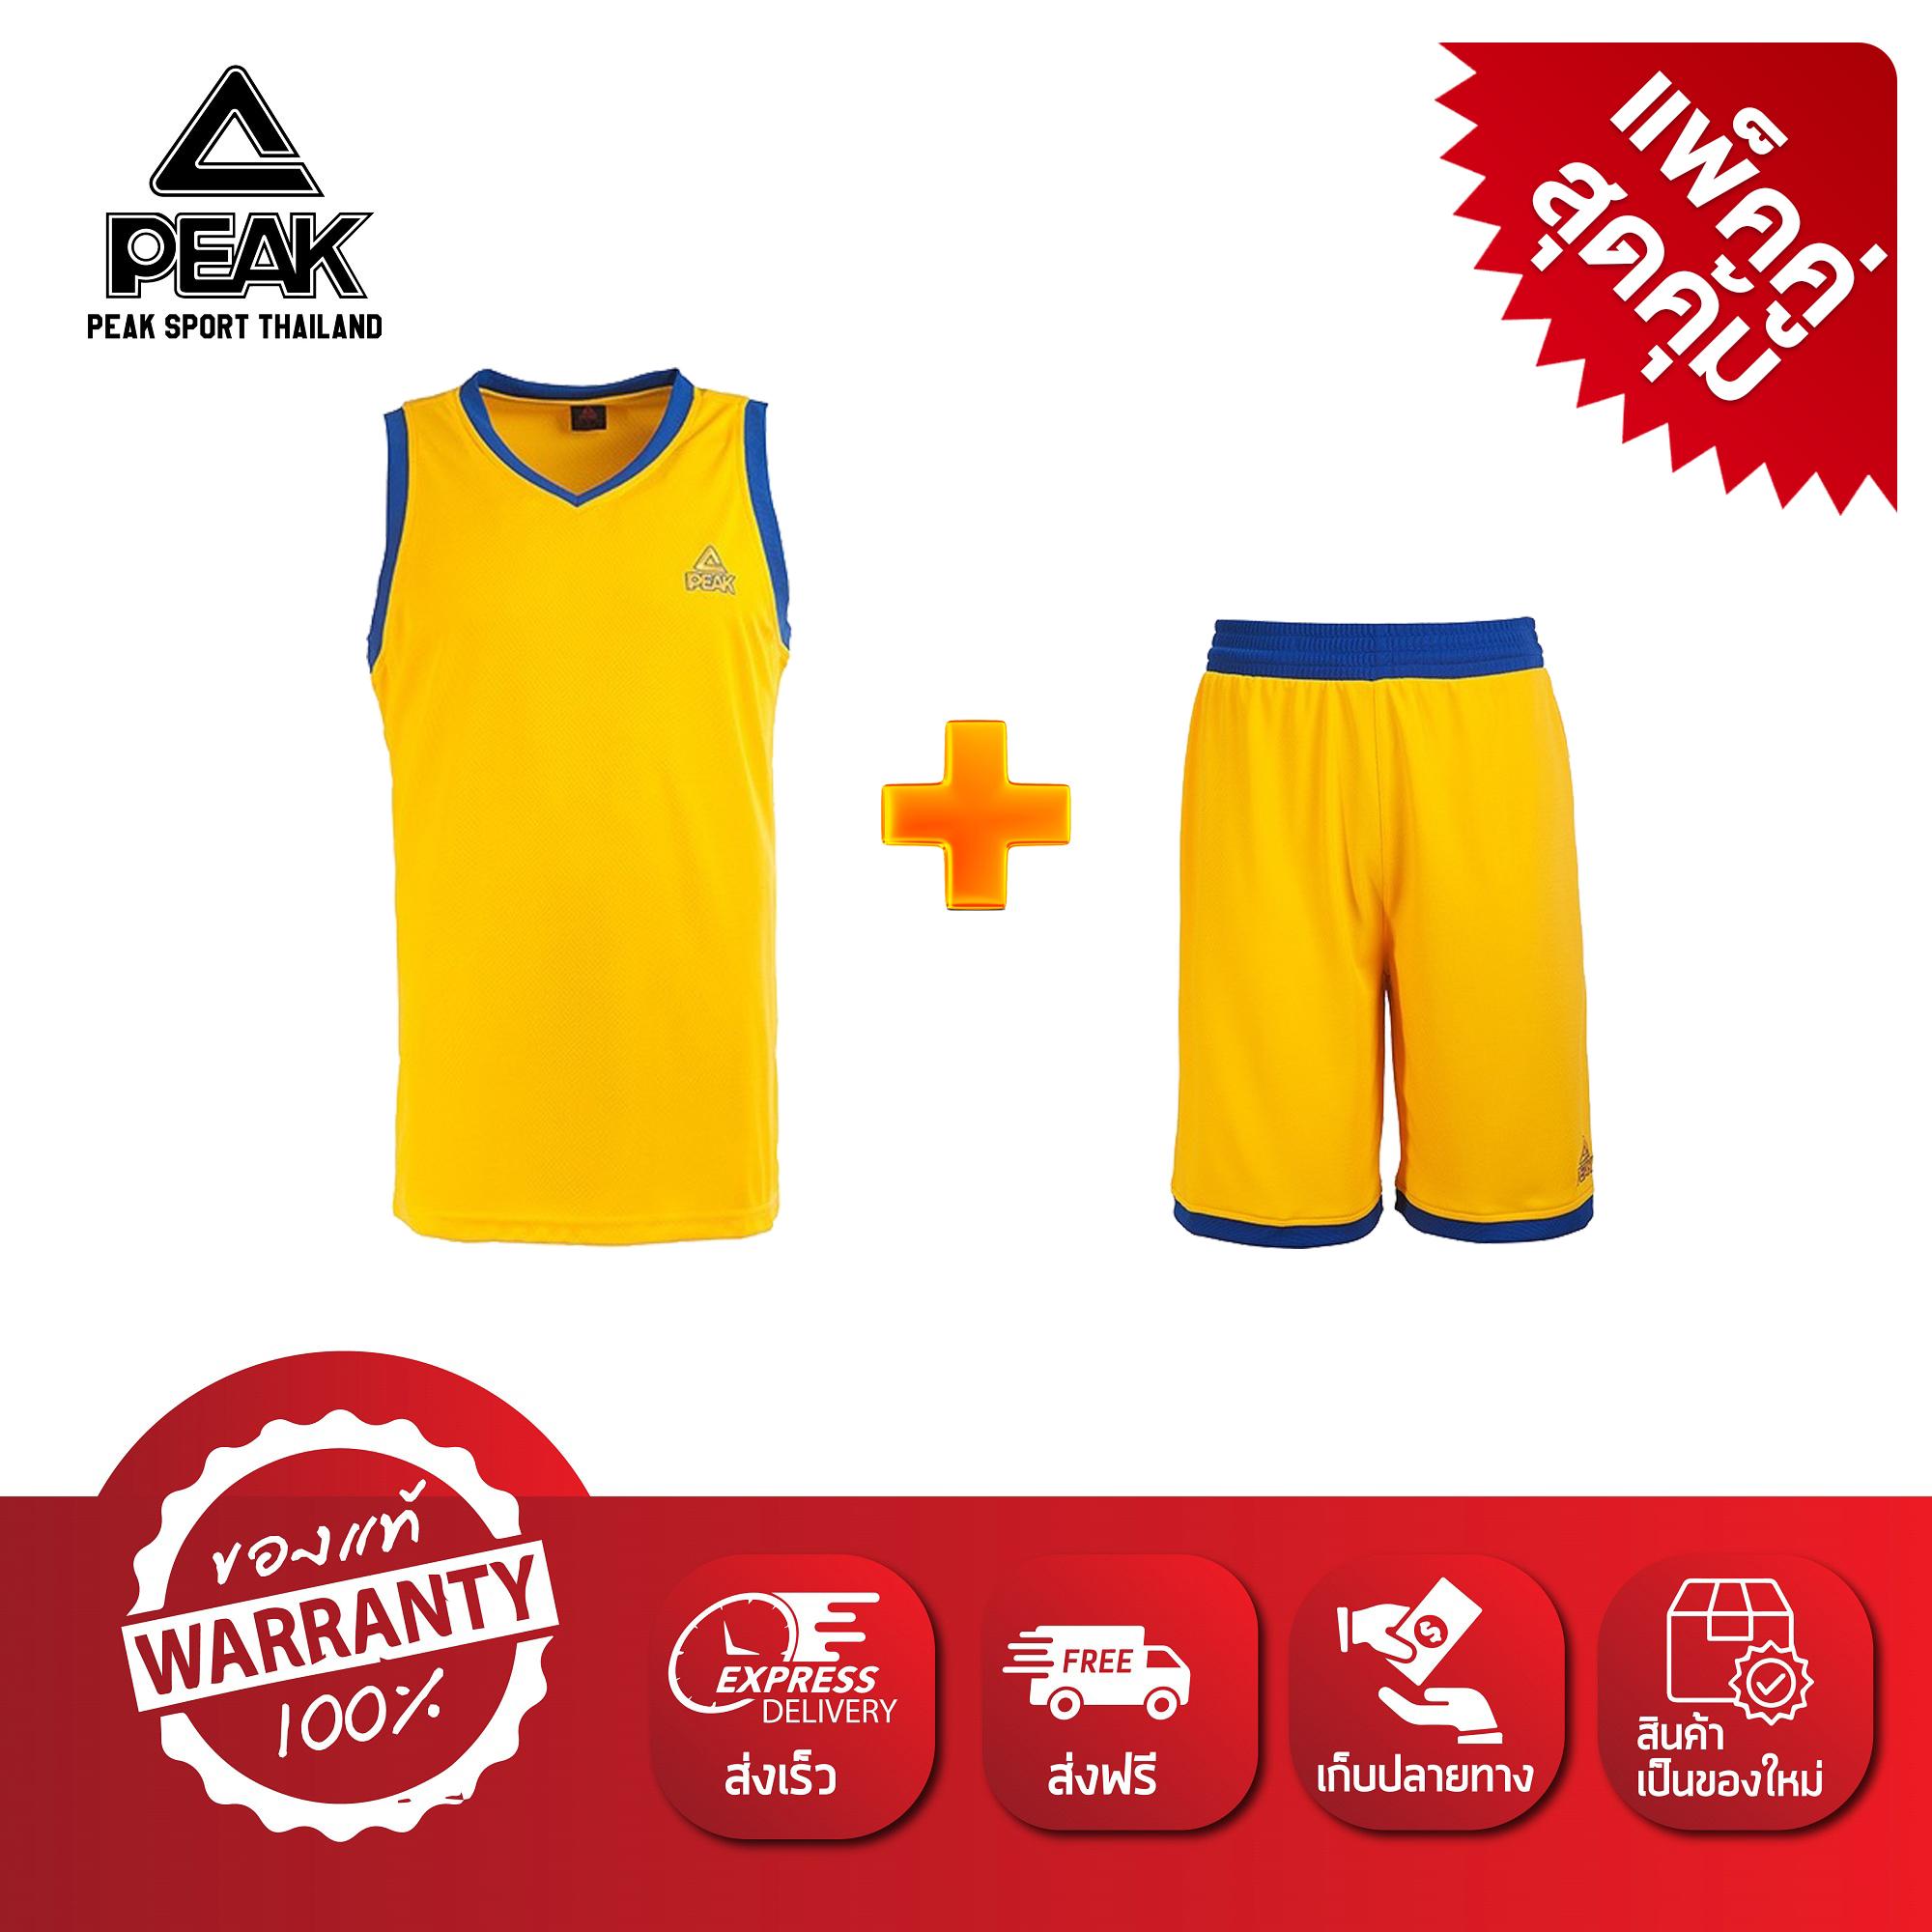 PEAK เสื้อ ผ้า กีฬา บาสเกตบอล Basketball Sport Jersey พีค รุ่น F752141 สีส้ม